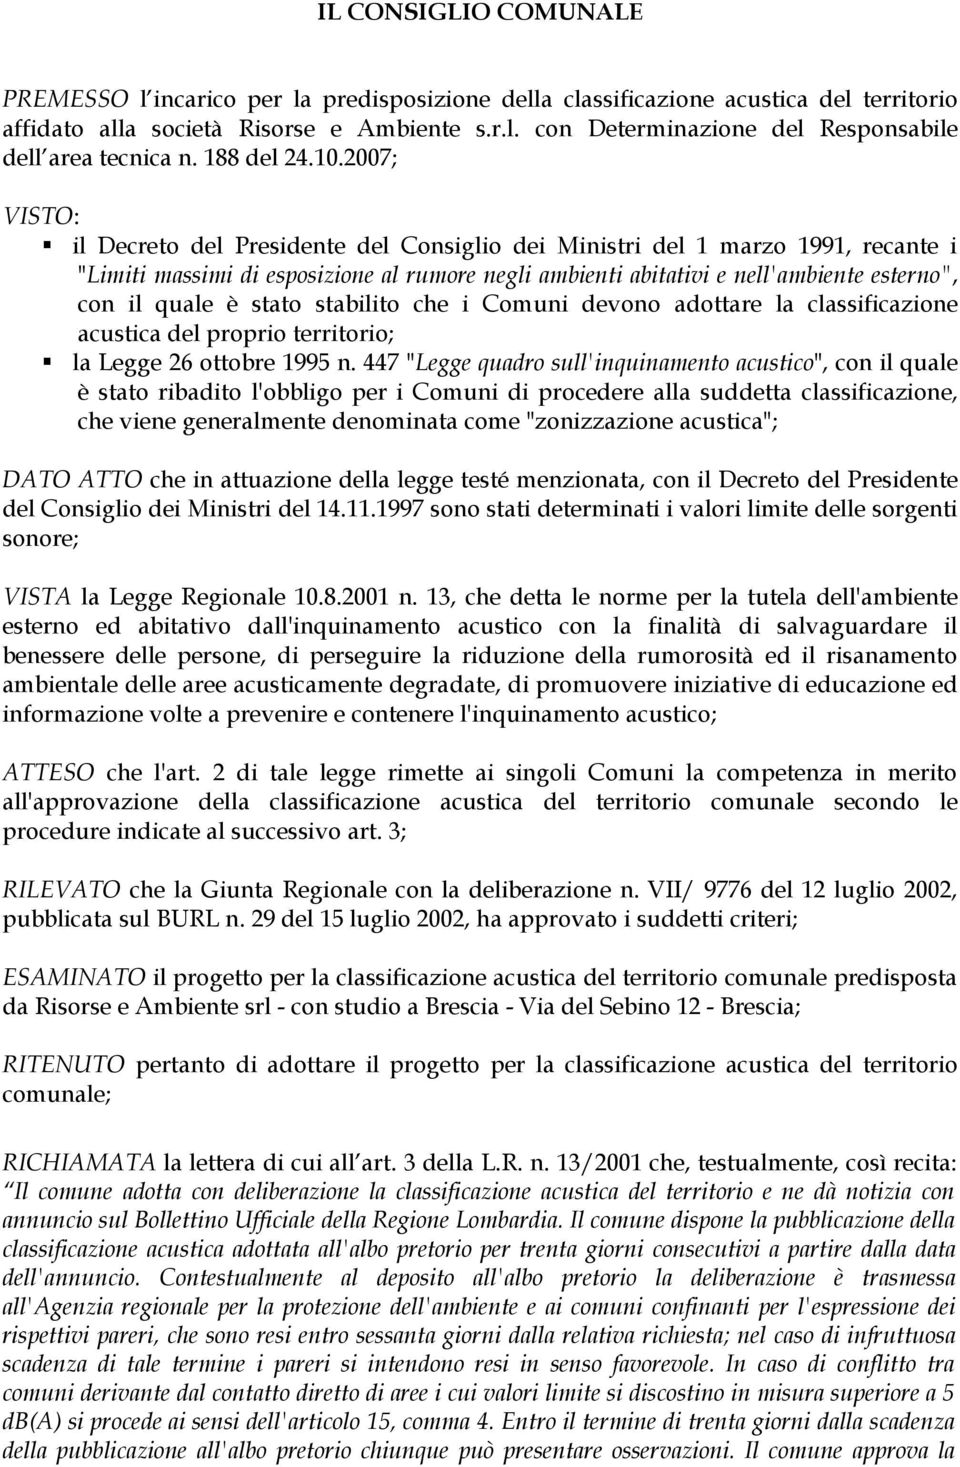 2007; VISTO: il Decreto del Presidente del Consiglio dei Ministri del 1 marzo 1991, recante i "Limiti massimi di esposizione al rumore negli ambienti abitativi e nell'ambiente esterno", con il quale